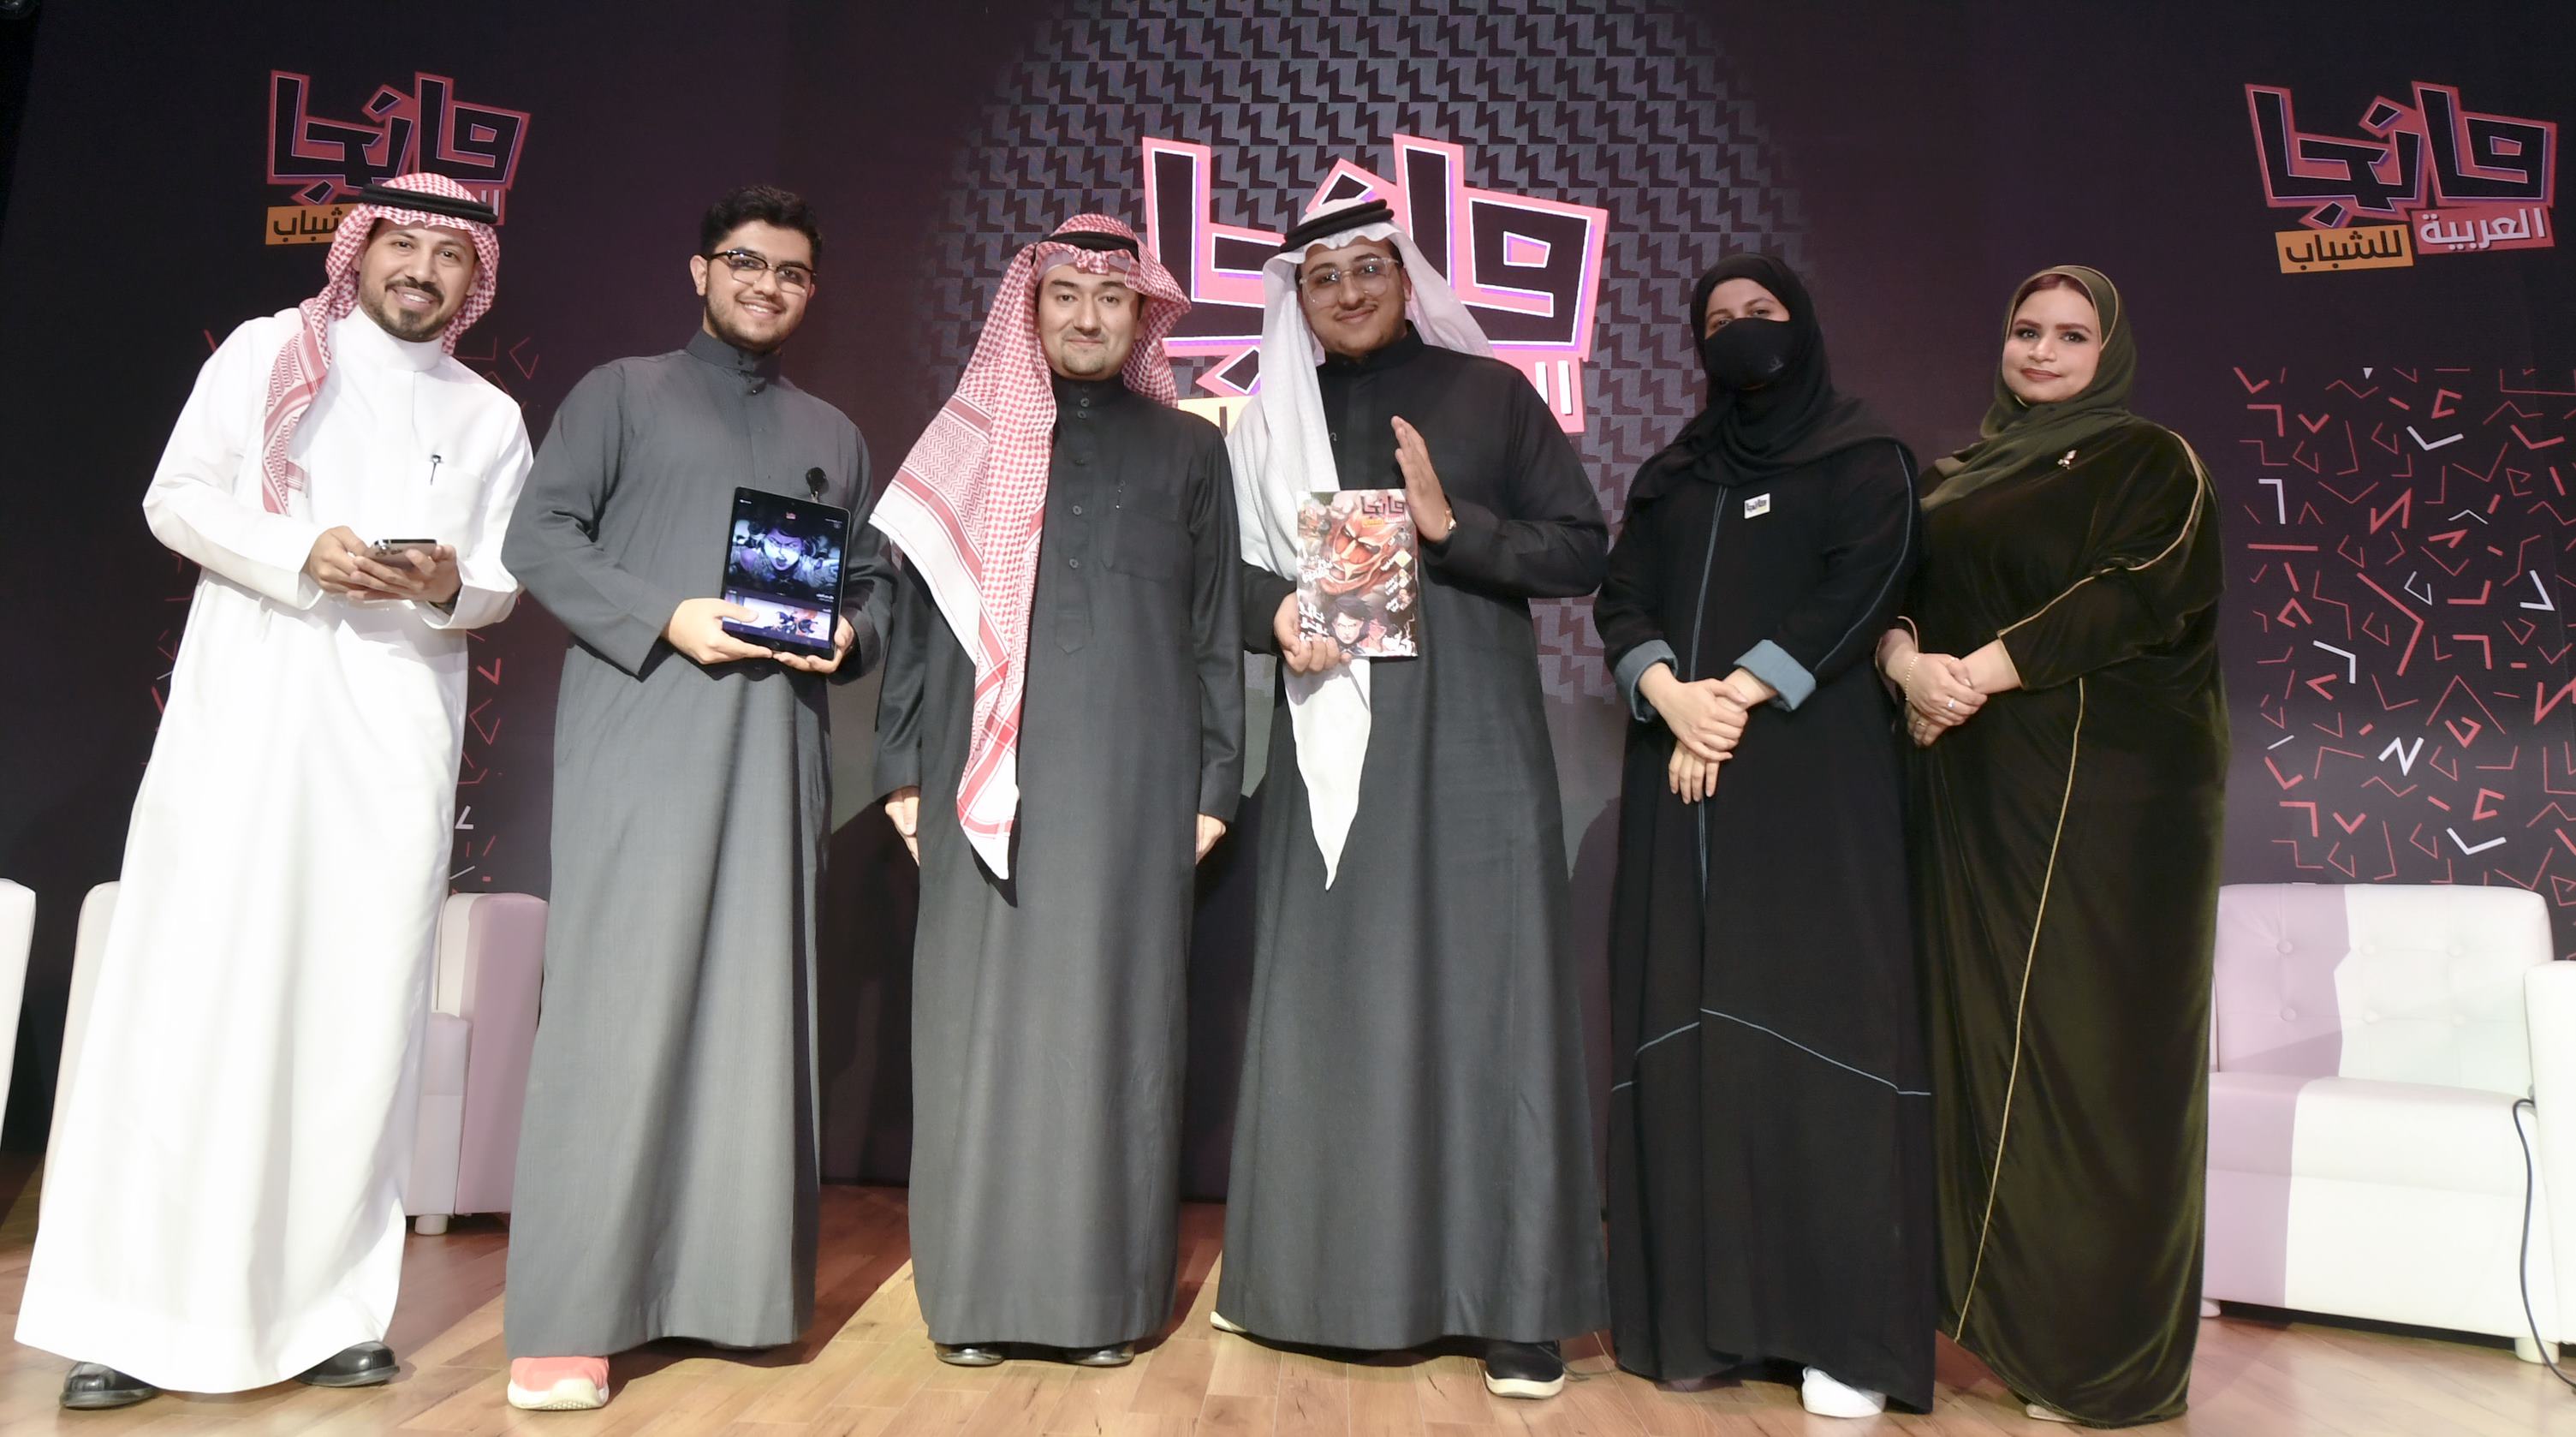 المجموعة السعودية للأبحاث والإعلام تطلق العدد الأول من مجلة "مانجا العربية للشباب"  